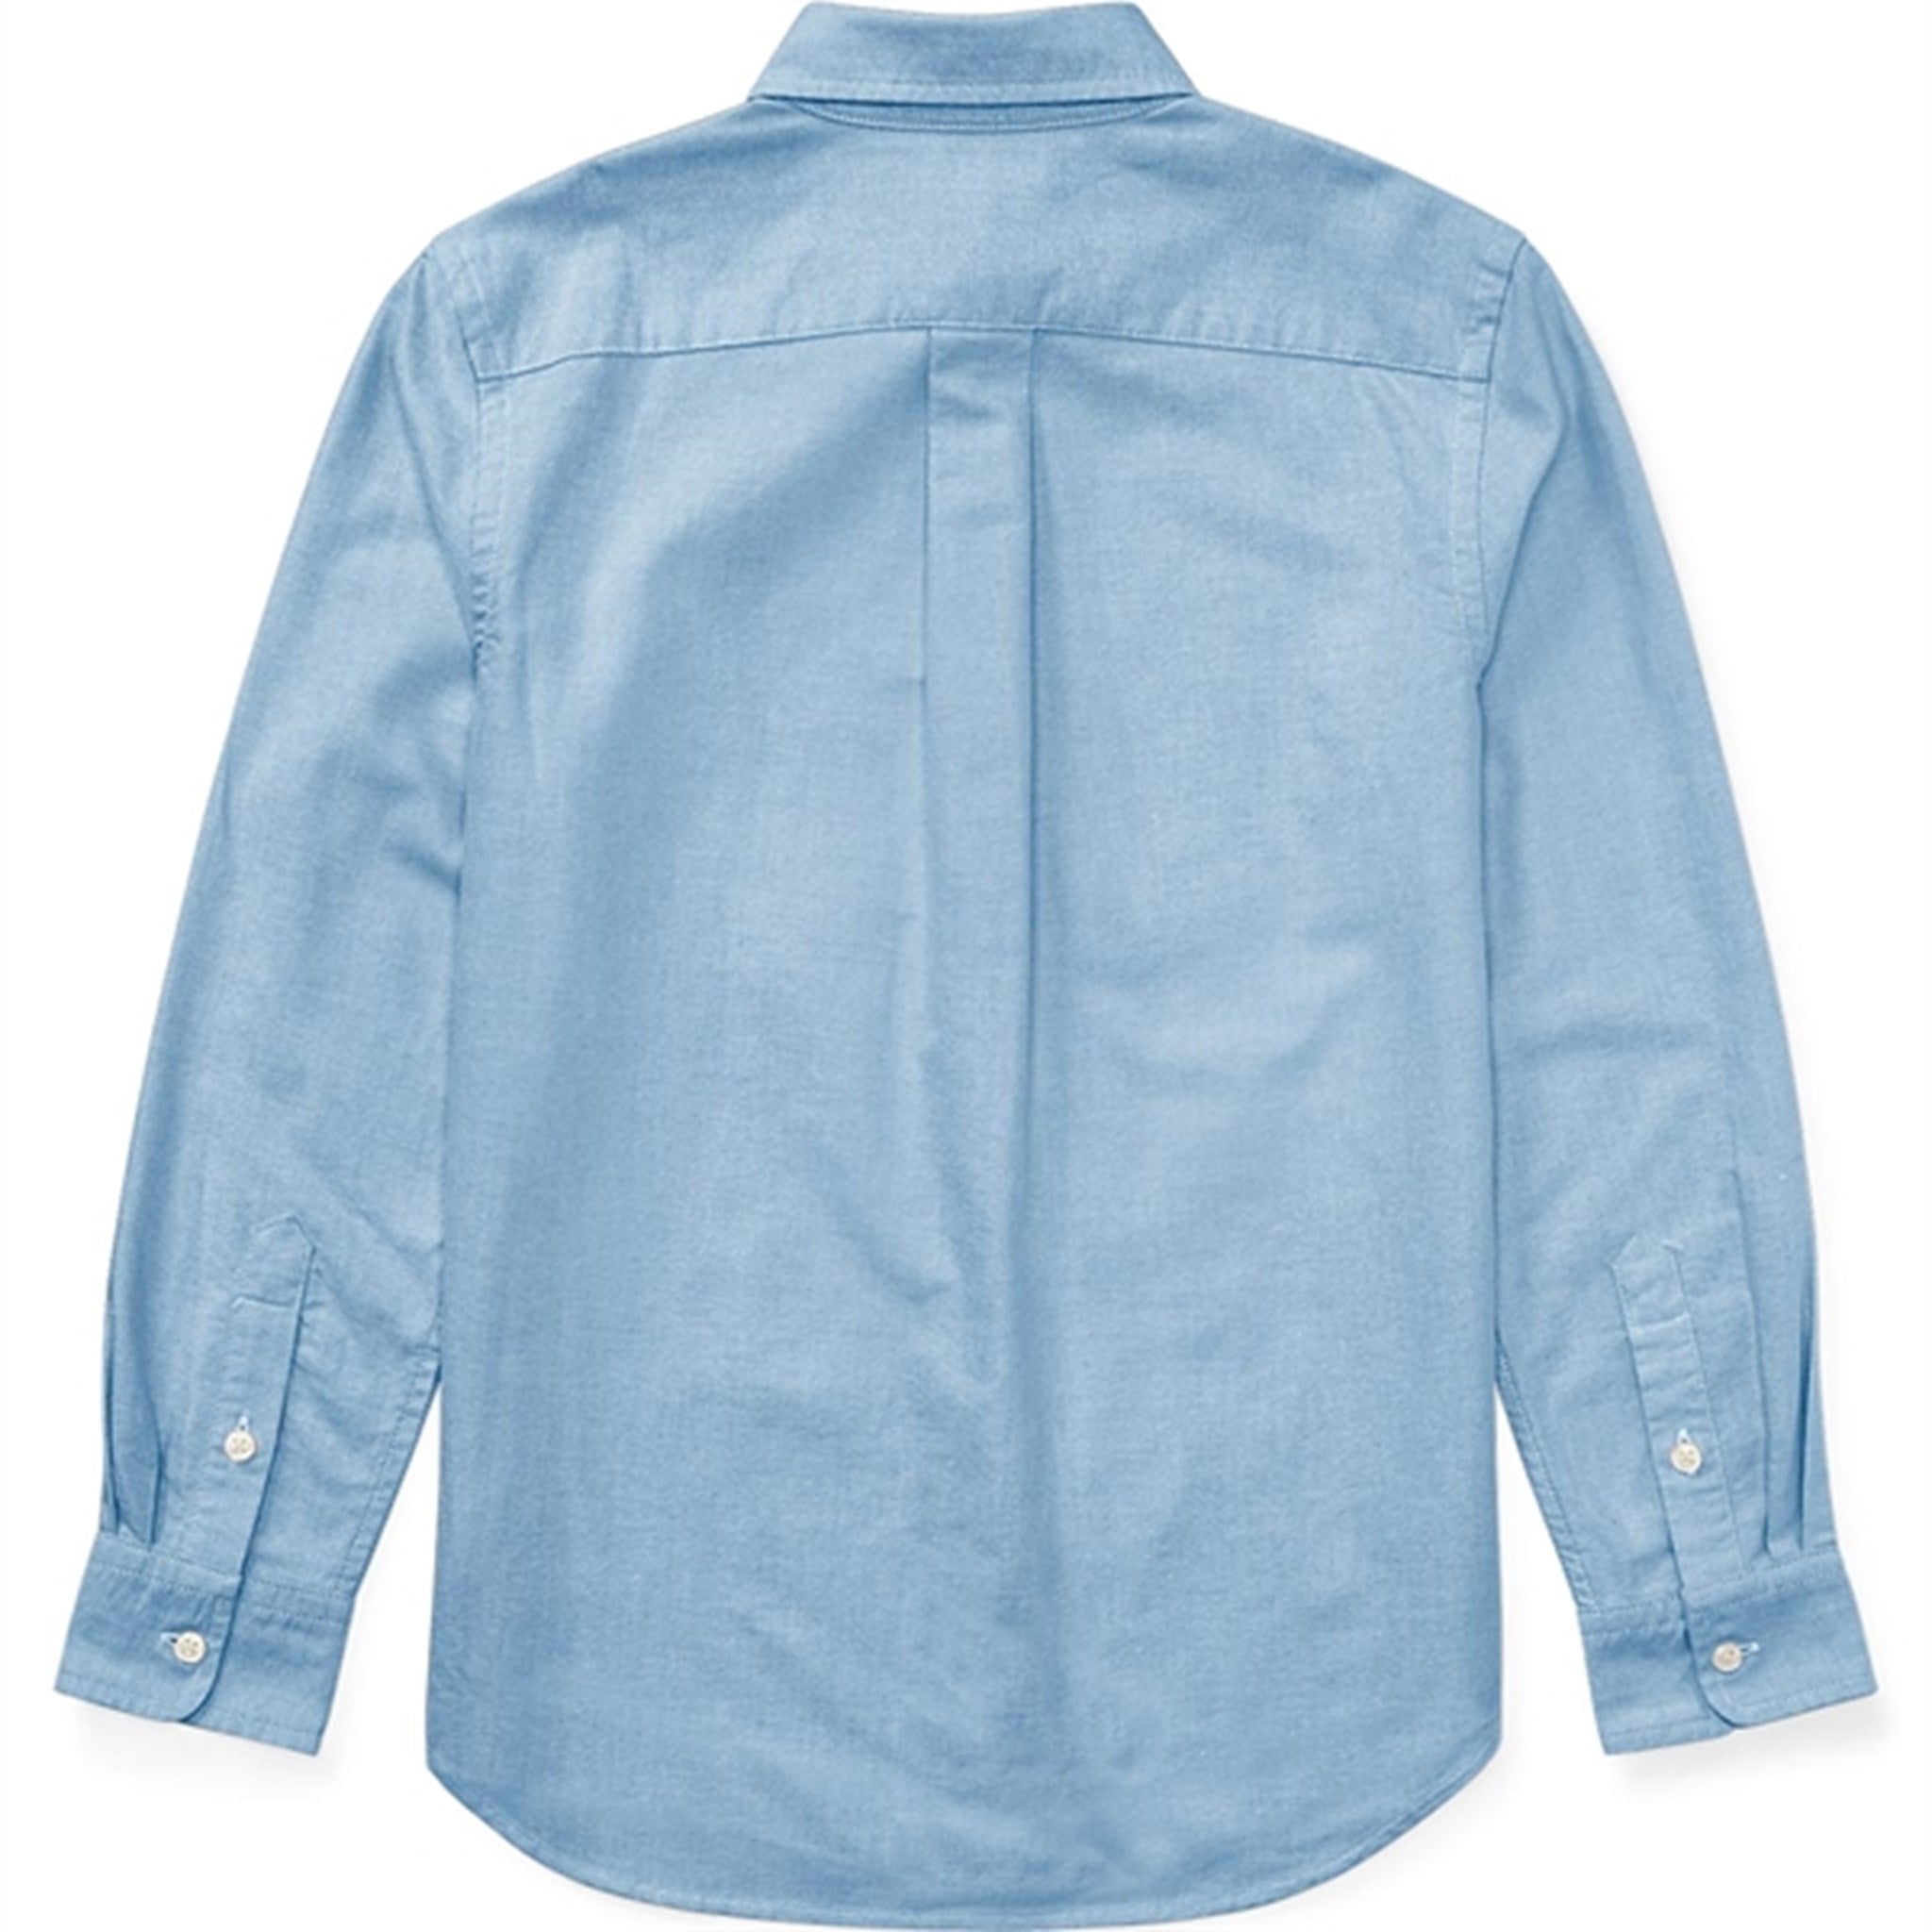 Polo Ralph Lauren Boy Long Sleeved Shirt BSR BluePolo Ralph Lauren Boy Slim Fit Shirt Blue 2